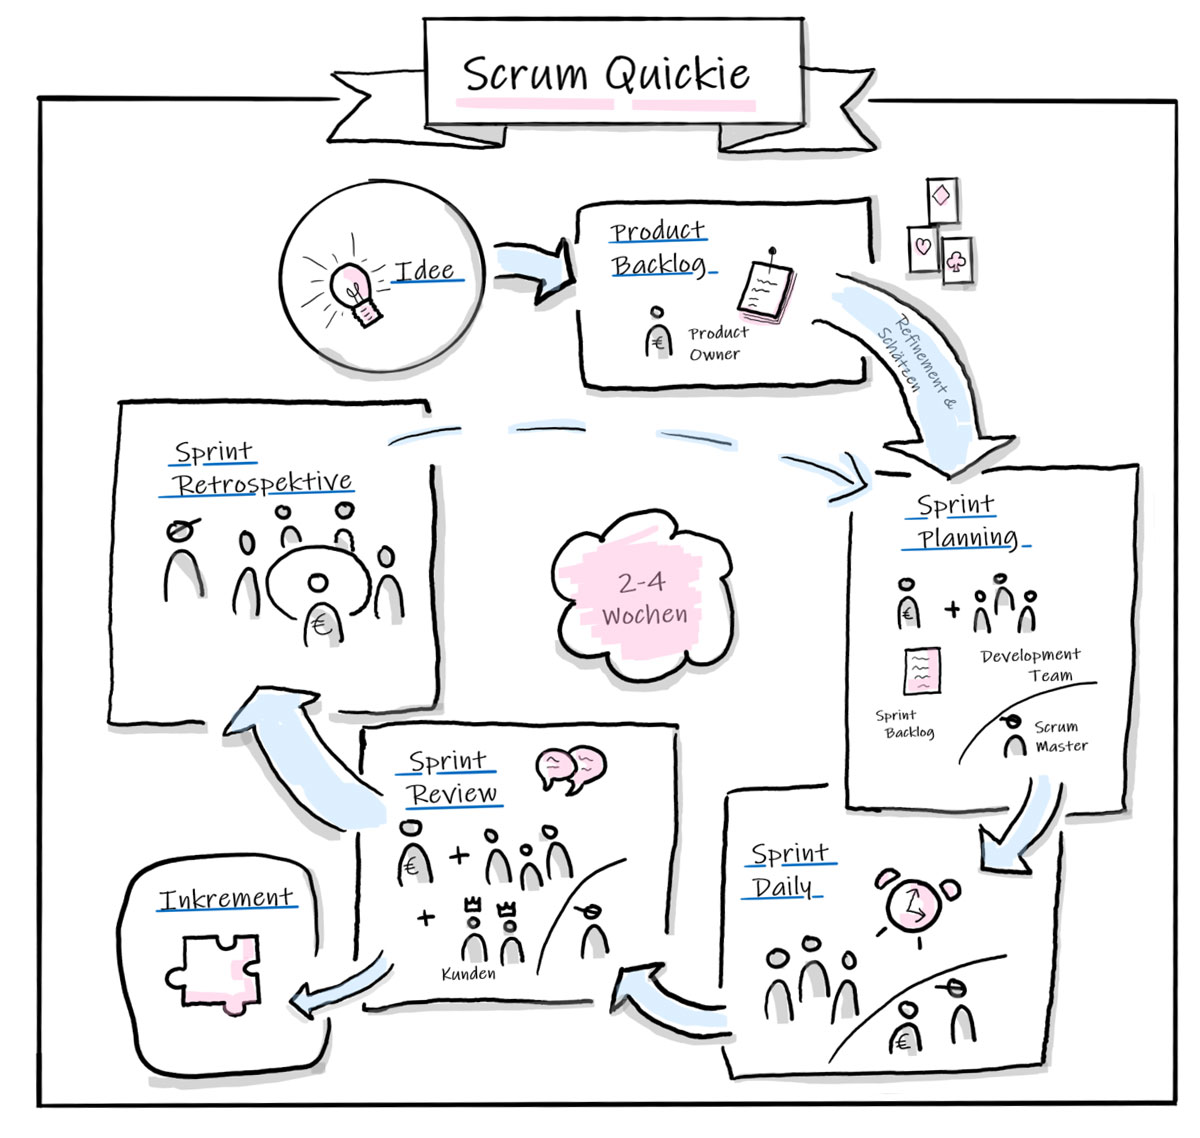 Der SCRUM-Quickie beschreibt die Methode von der Idee bis zum Inkrement.